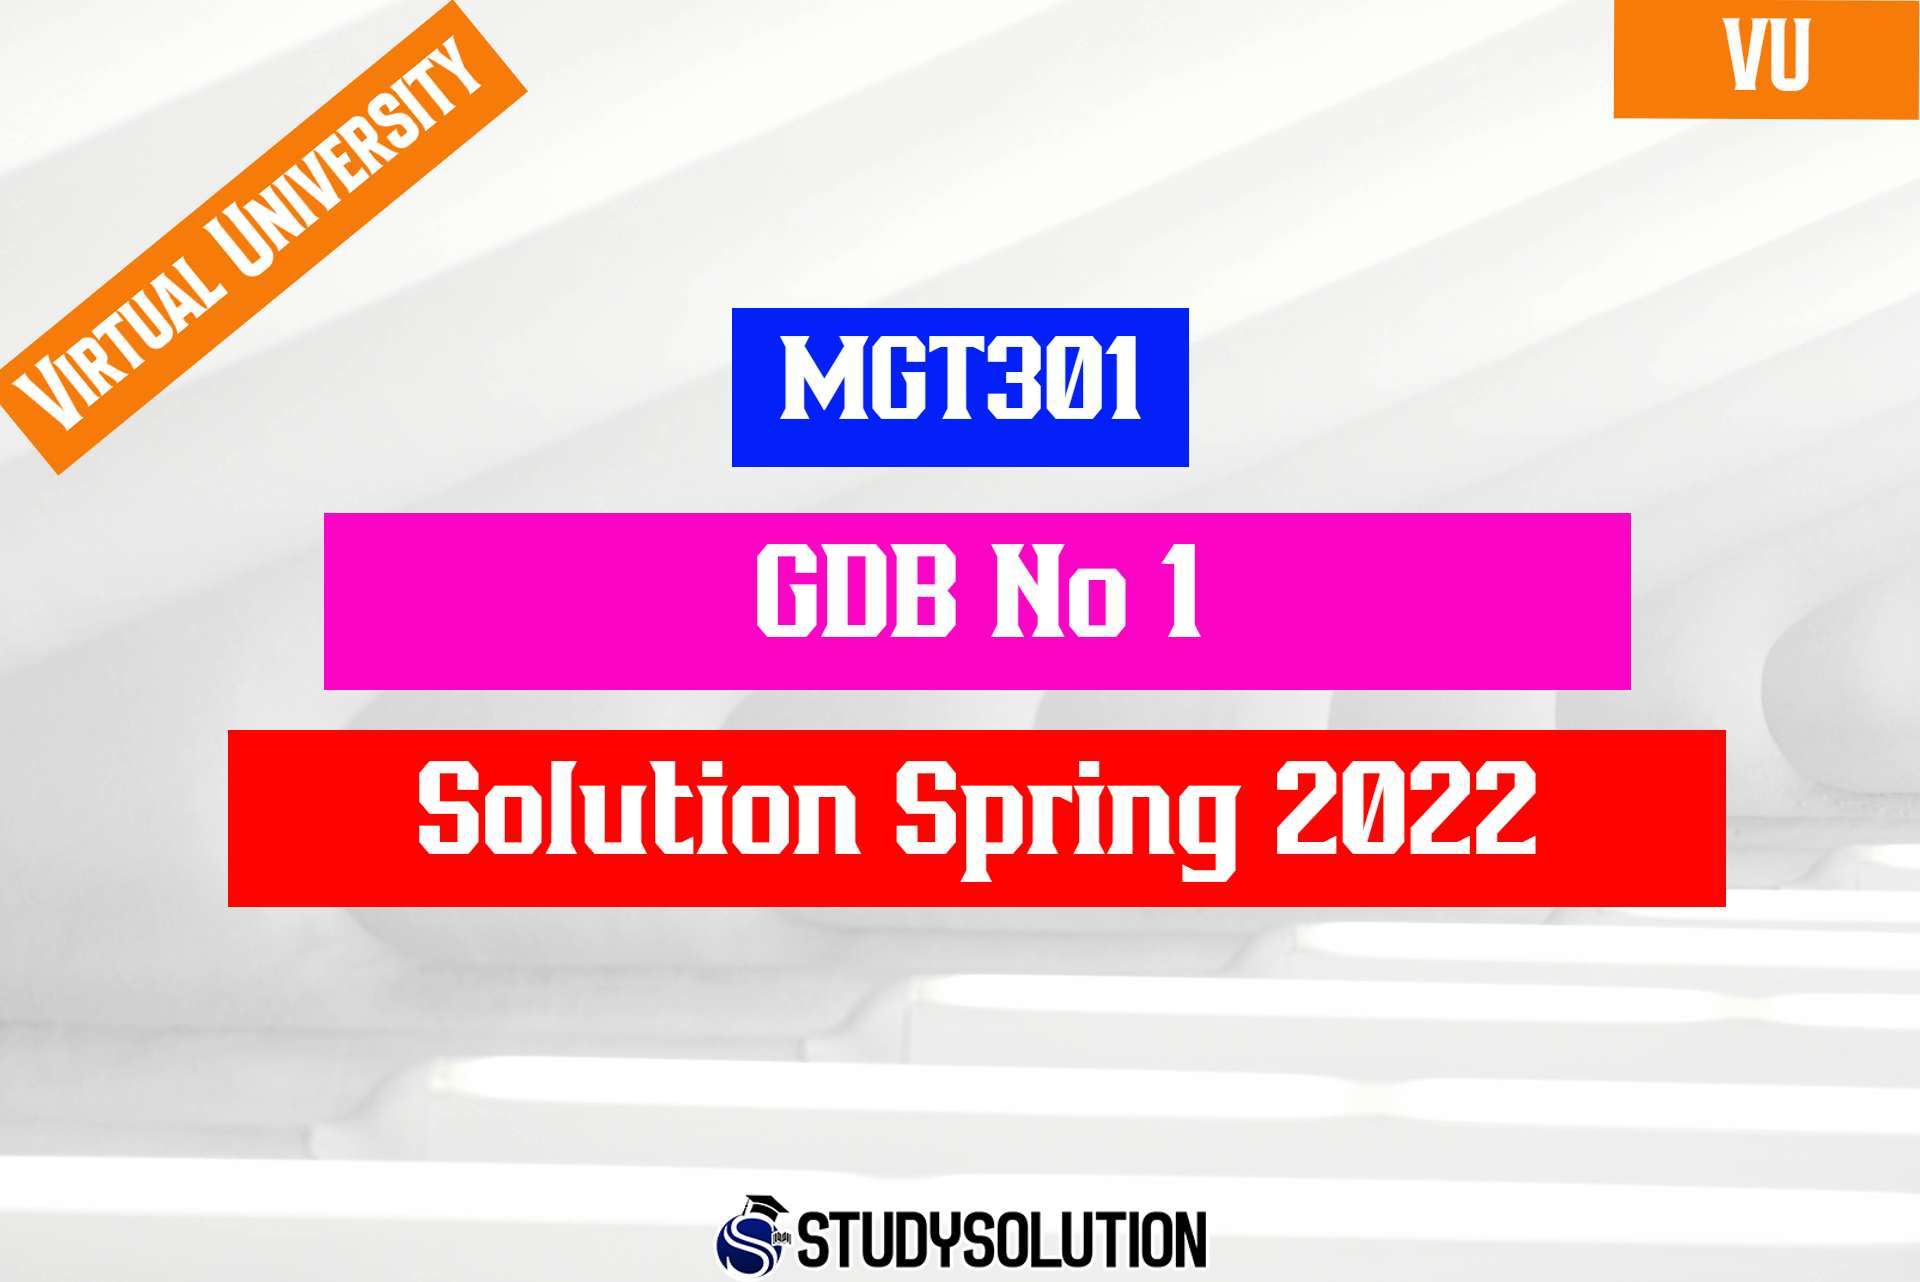 MGT301 GDB No 1 Solution Spring 2022